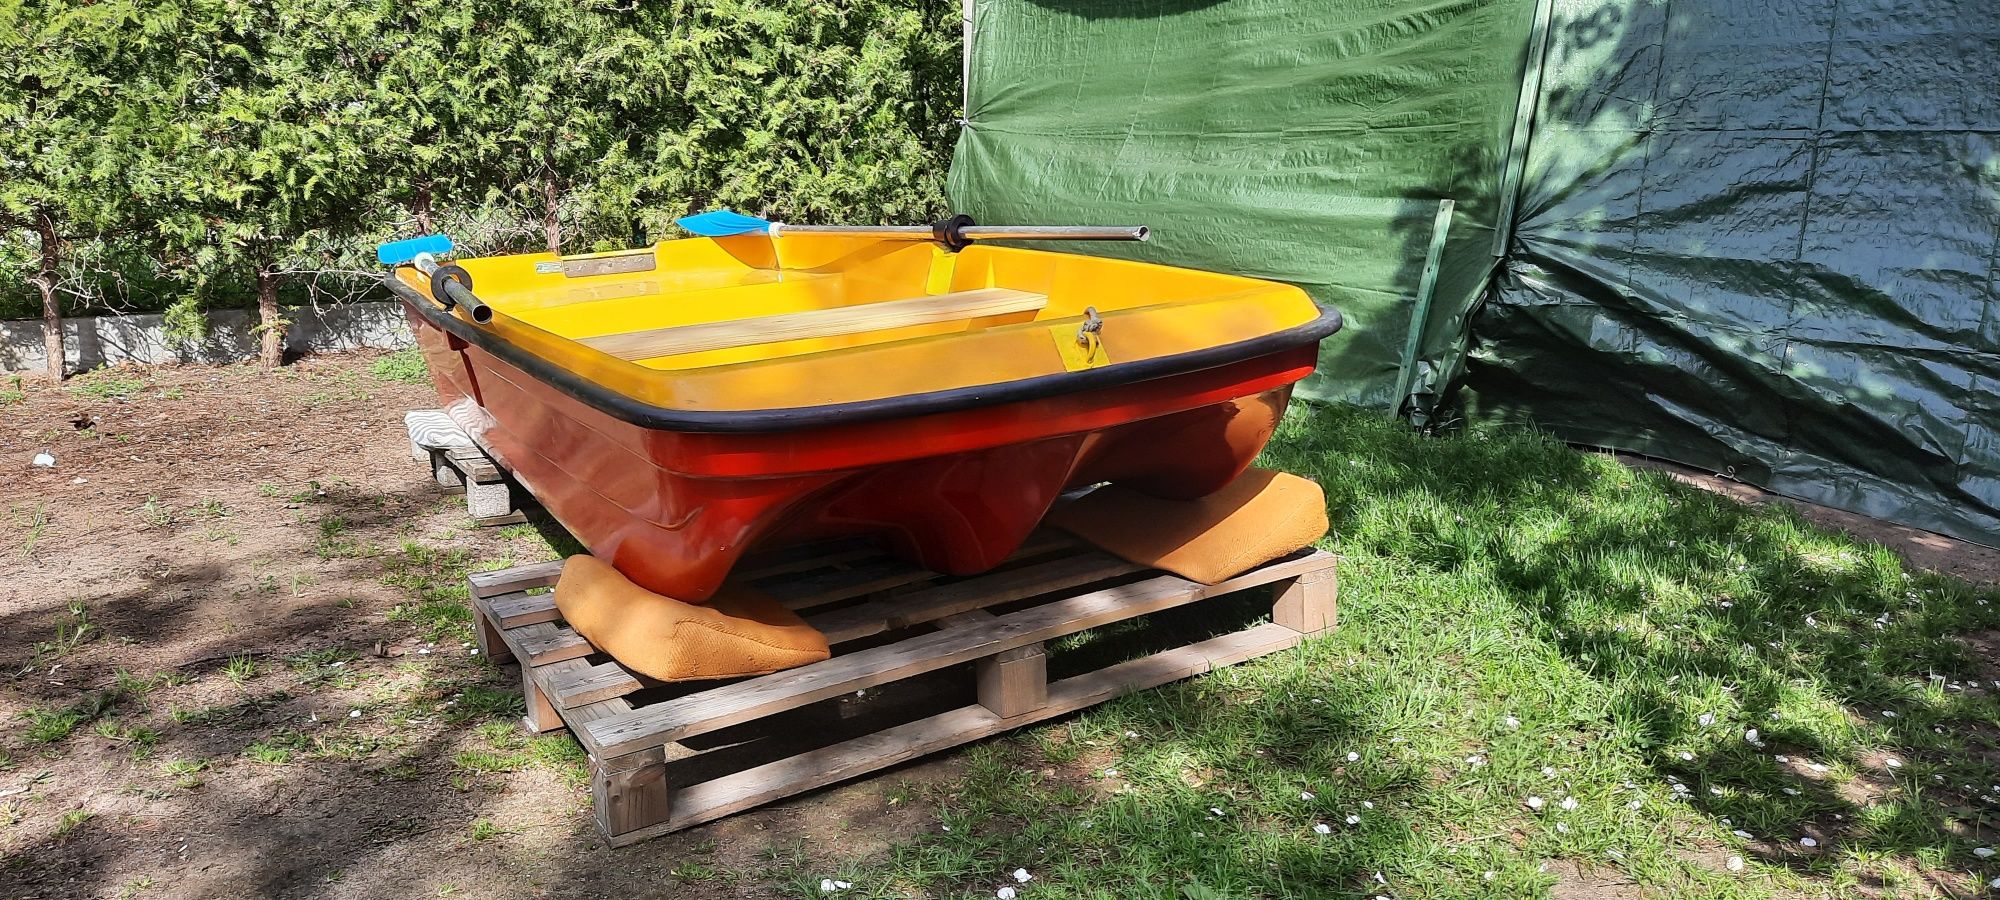 POLSPORT Chojnice łódka wędkarska turystyczna wiosłowa płaskodenna